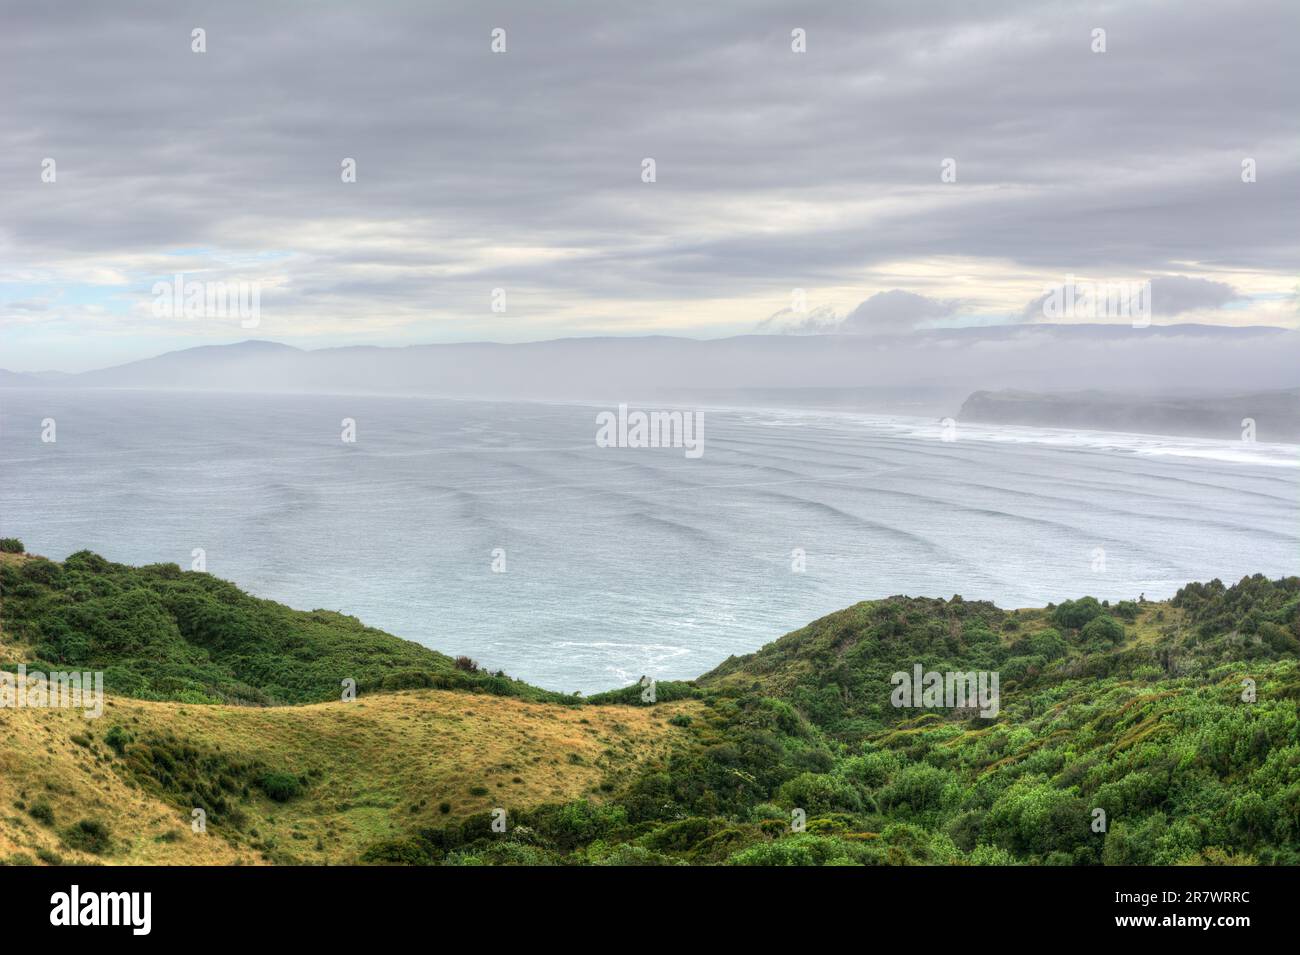 Splendido paesaggio marino caratterizzato da scogliere costiere ricoperte di vegetazione e vista sull'oceano sull'isola di Chiloe in Cile Foto Stock